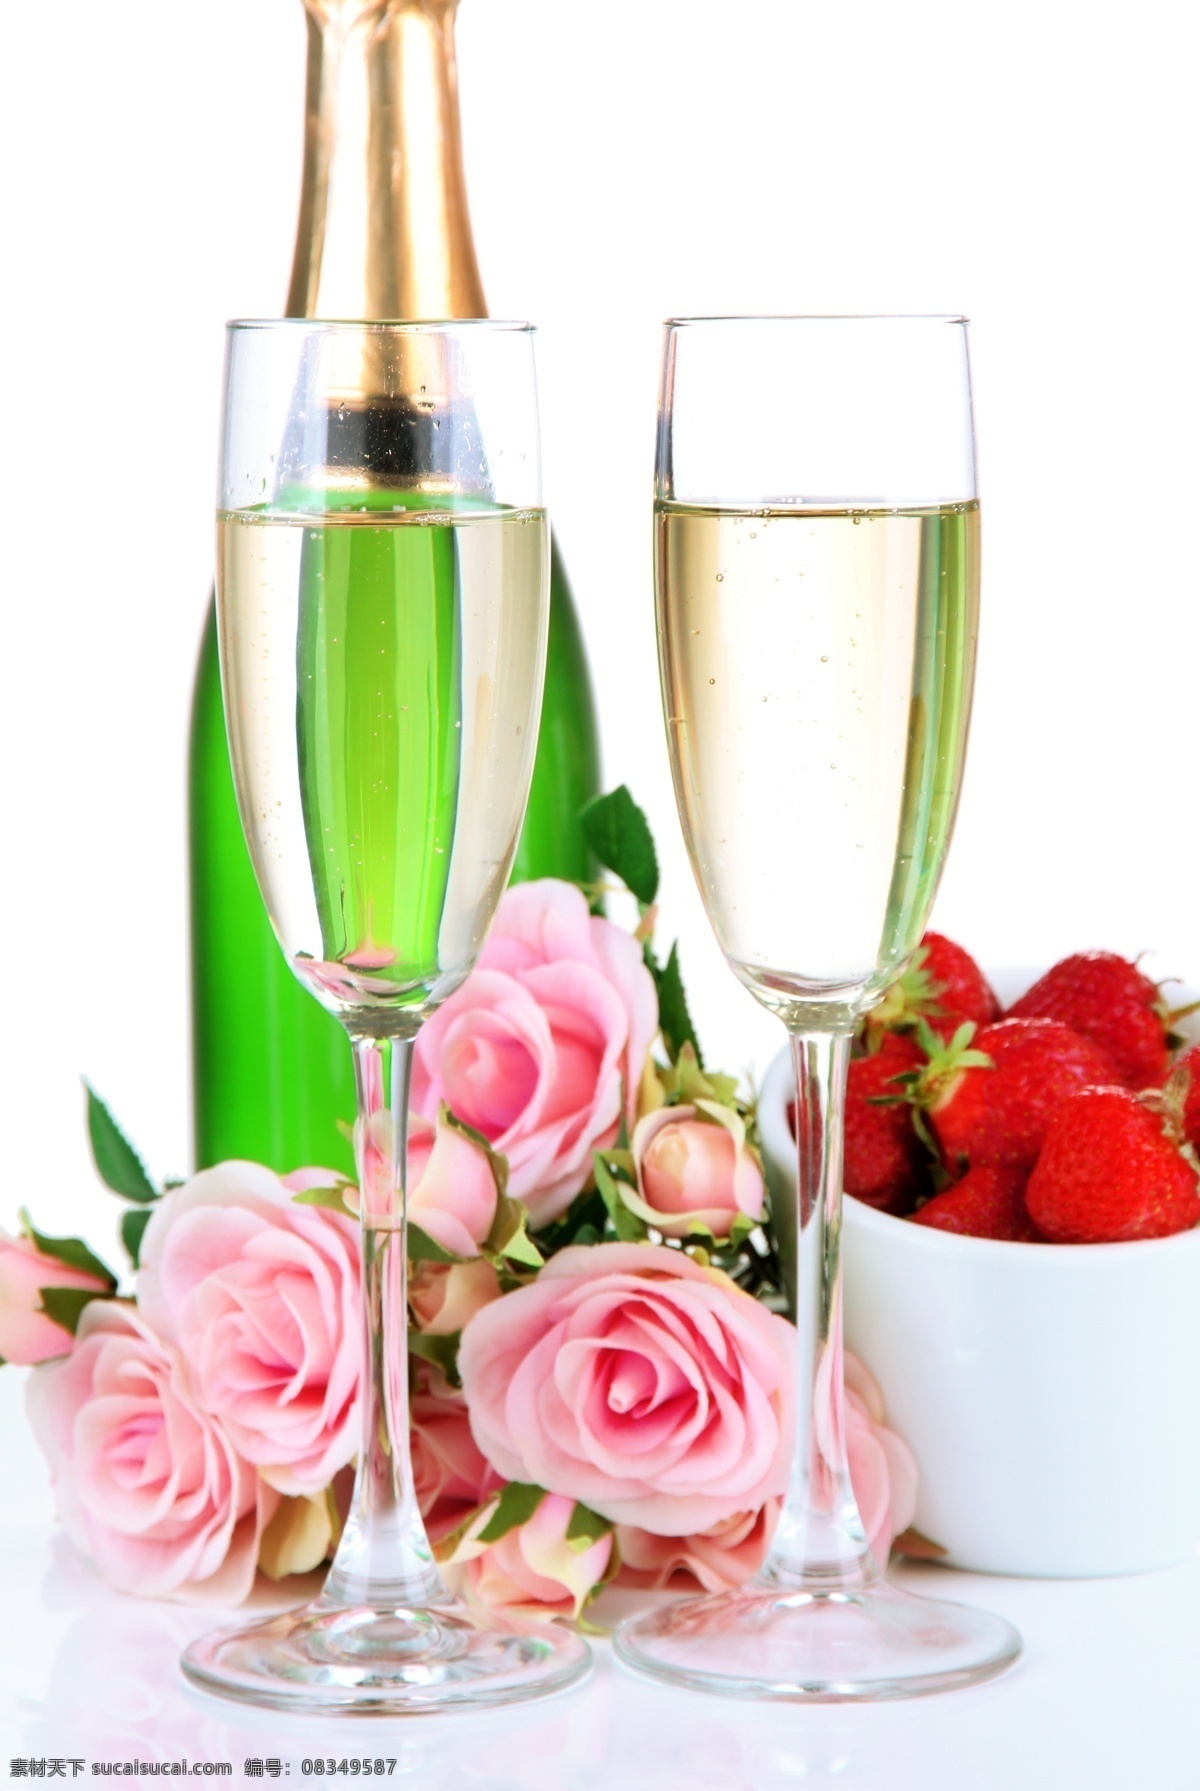 香槟酒 玫瑰 花朵 玫瑰花 草莓 食物 饮料 酒类图片 餐饮美食